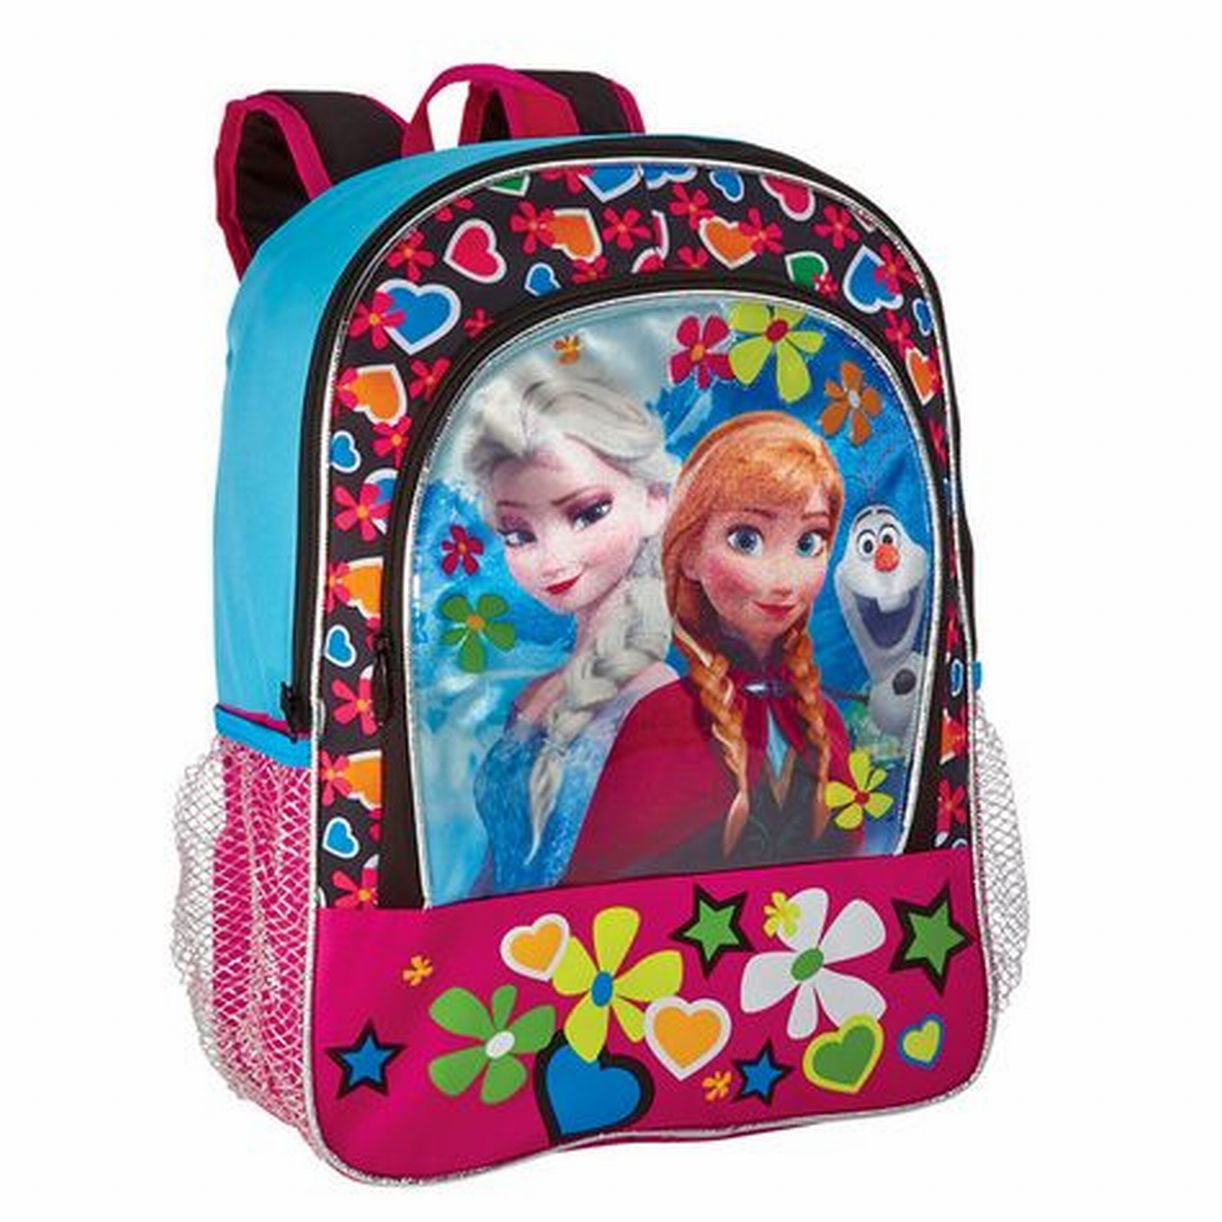 Frozen 14" Medium  School Backpack Lunch Bag 2pc Set Elsa Anna Olaf Pink Floral 